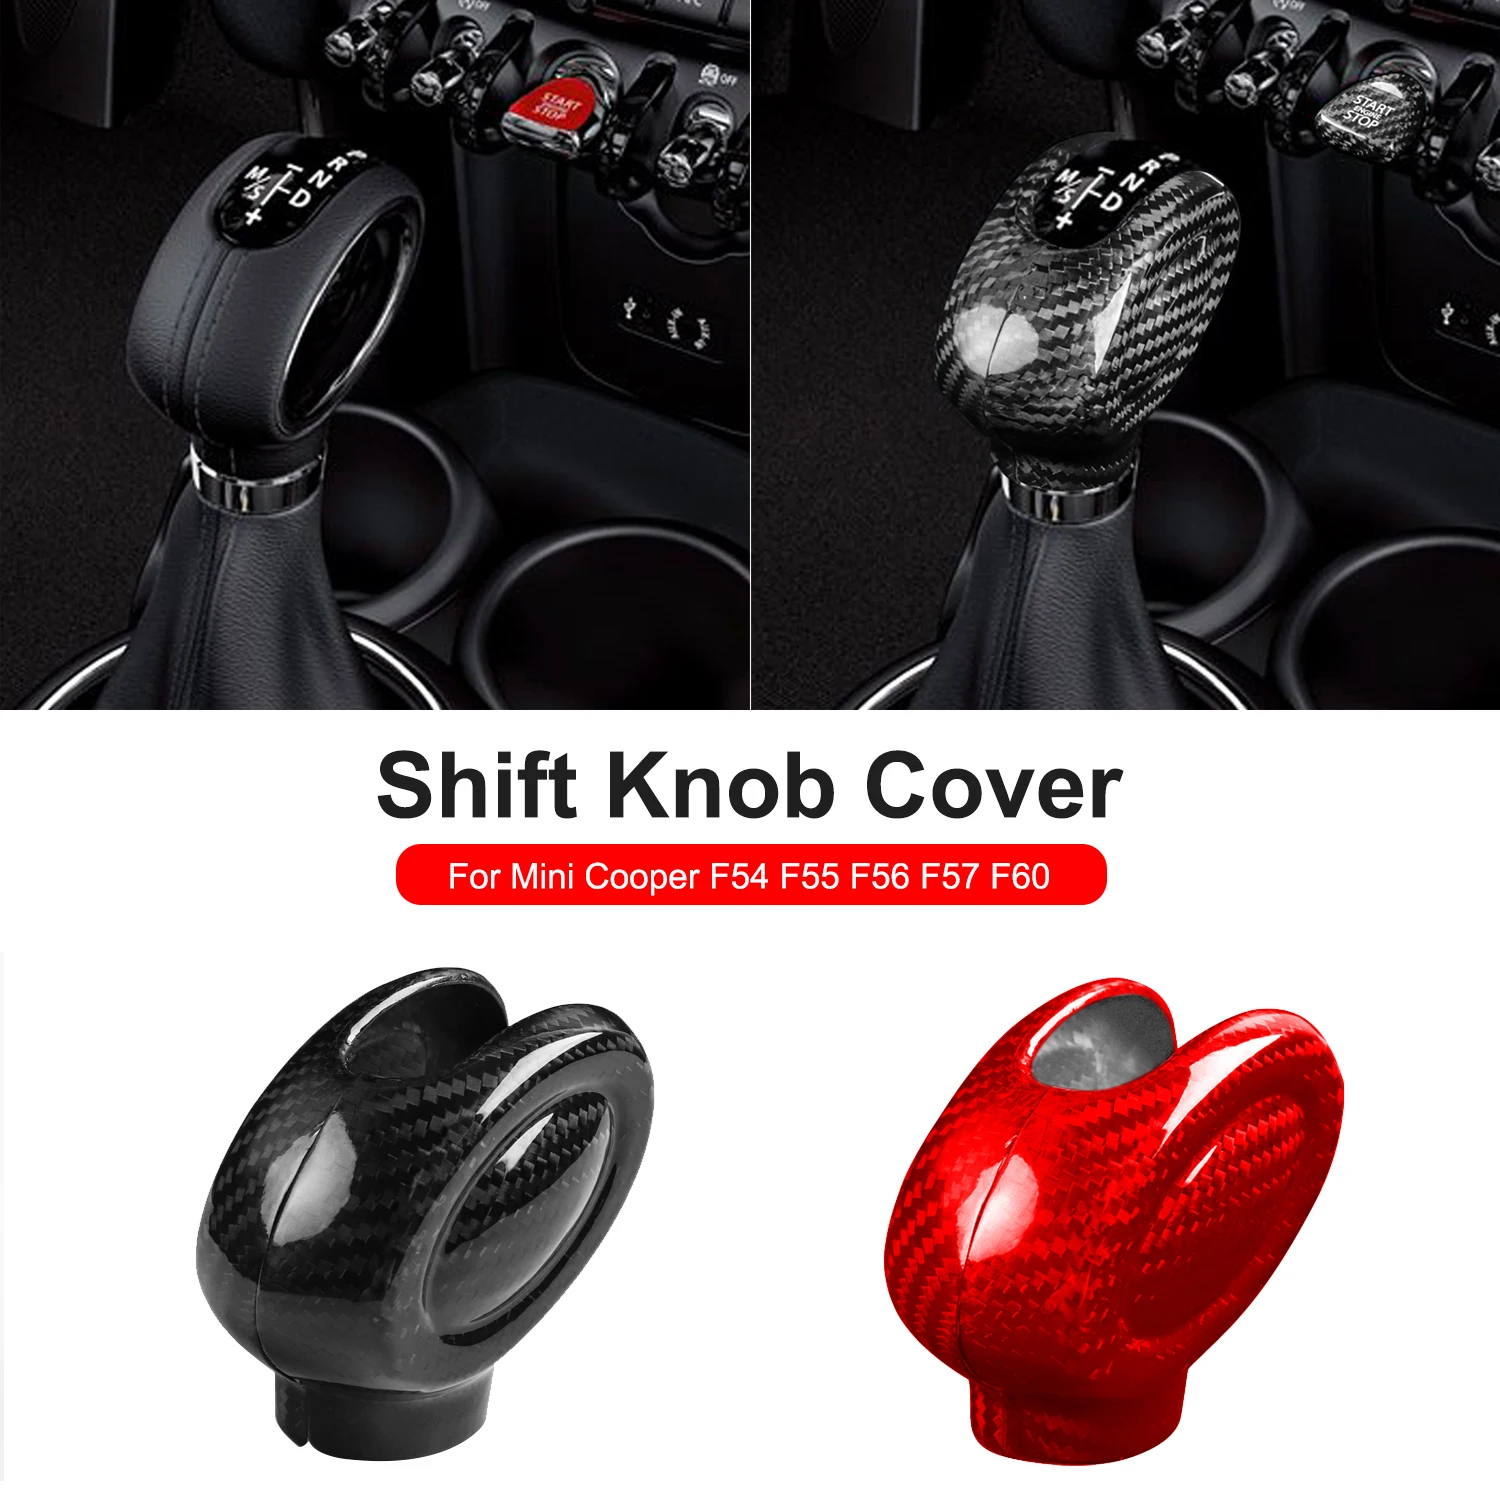 

New Real Carbon Fiber for Mini Cooper F54 F55 F56 F57 F60 Countryman Accessories Interior Trim Car Gear Shift Knob Cover